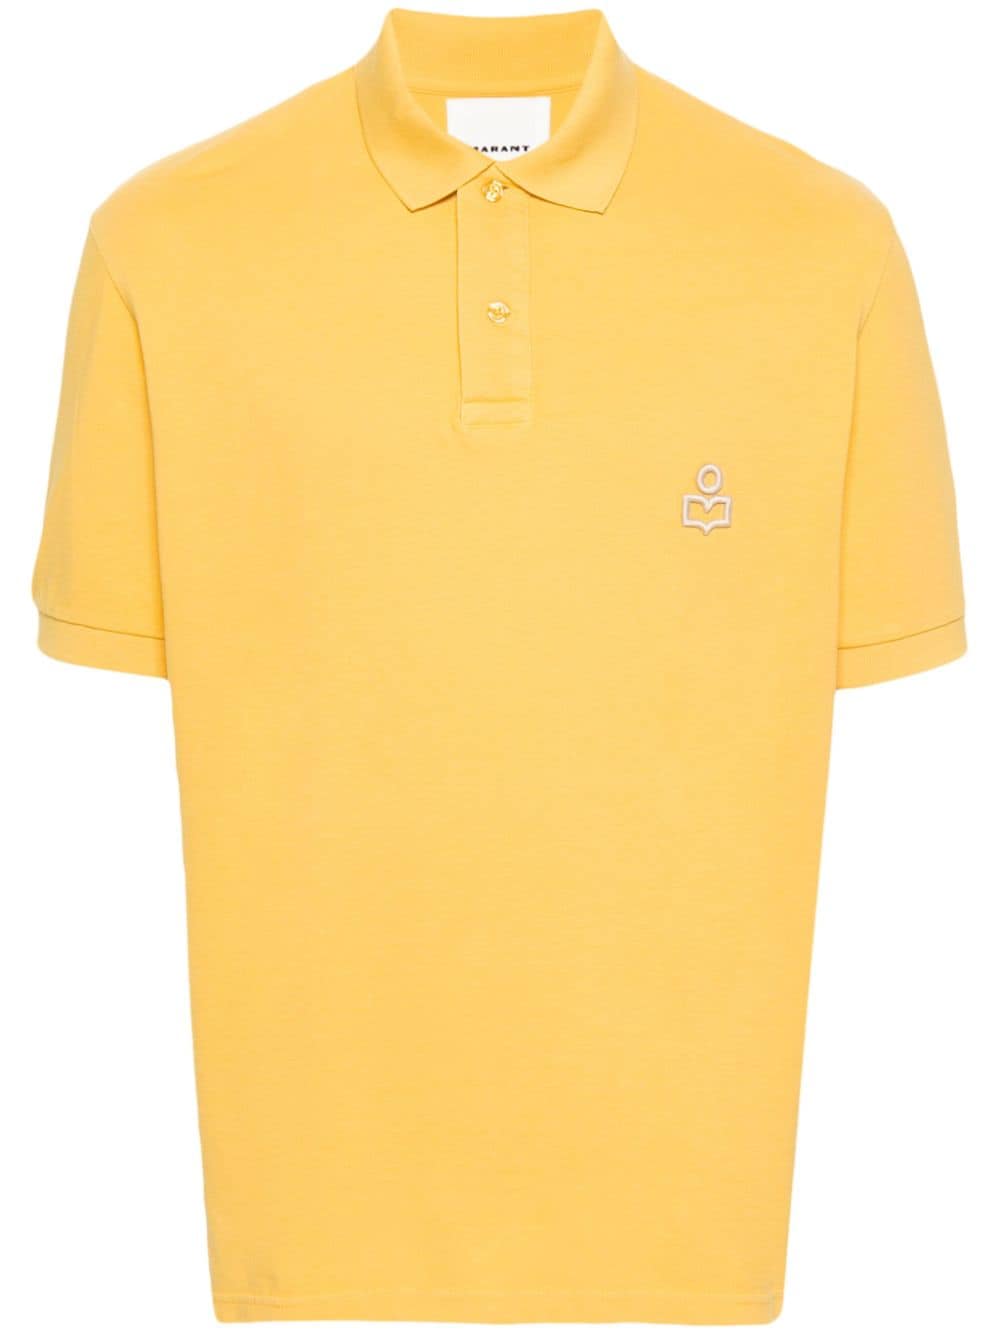 MARANT Afko cotton polo shirt - Yellow von MARANT